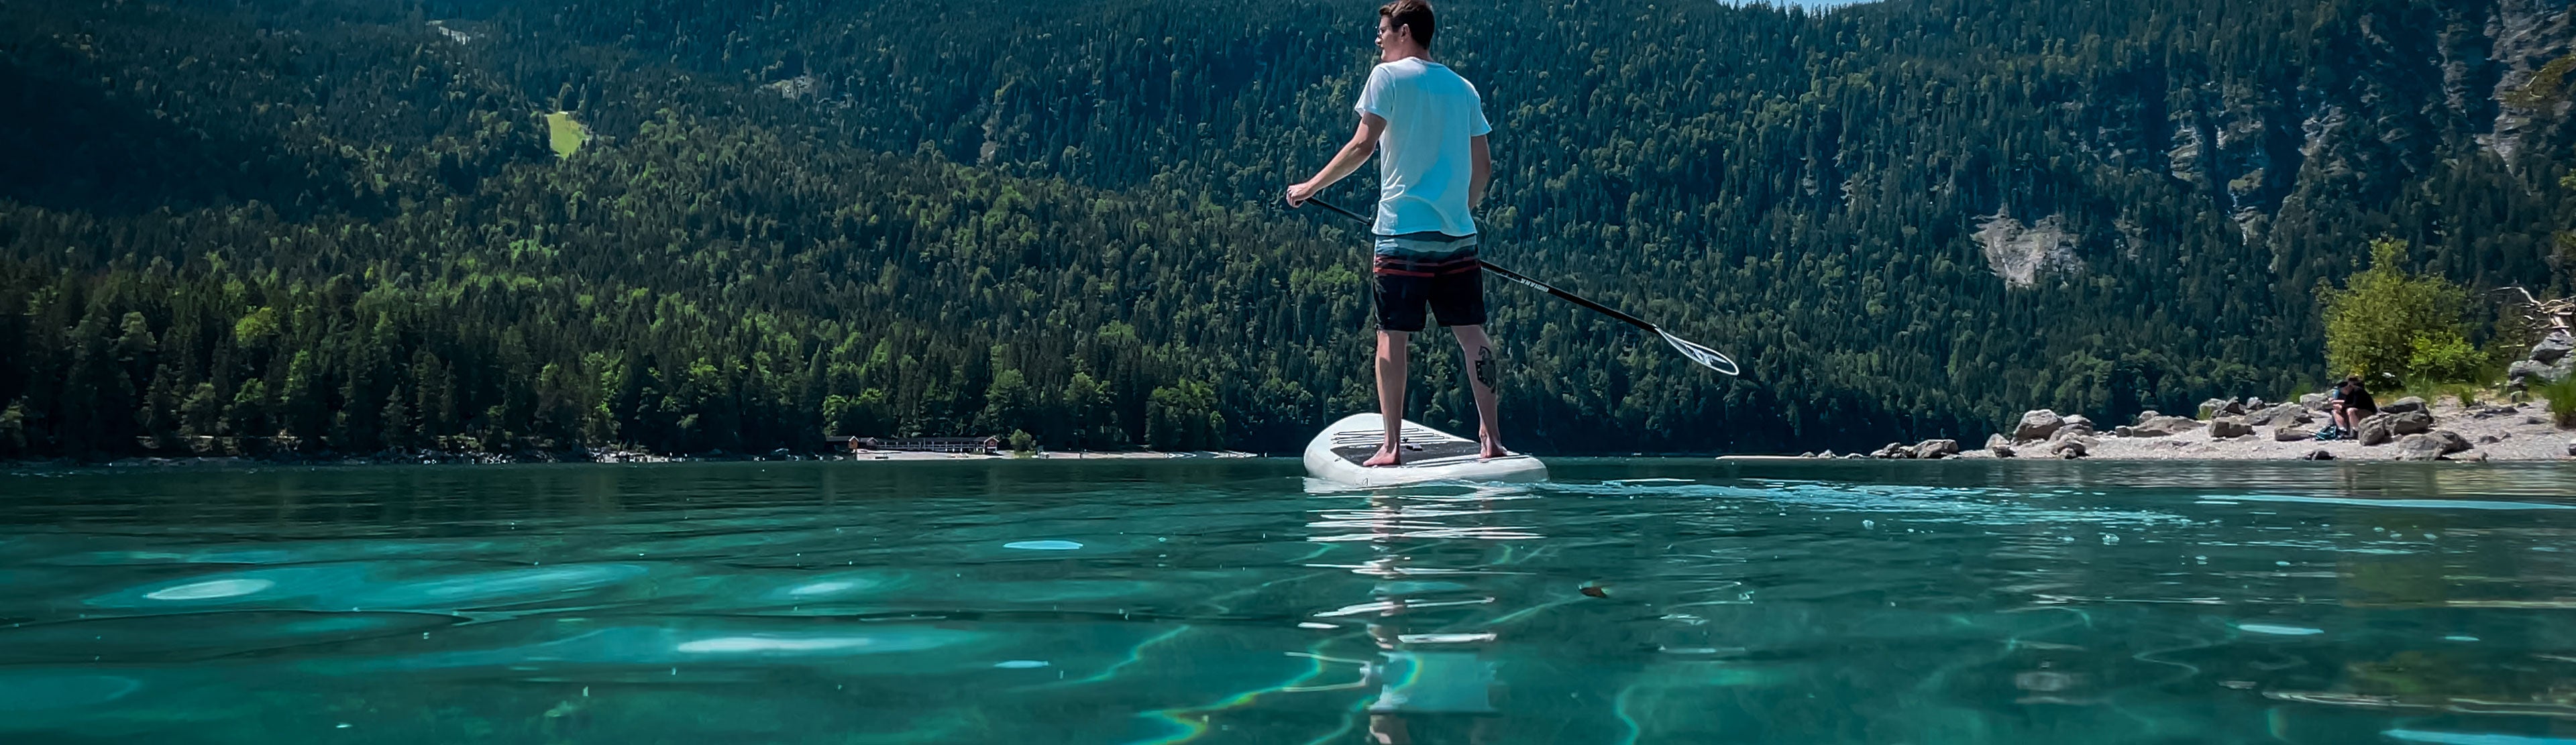 Mann steht auf SUP-Board auf Wasser